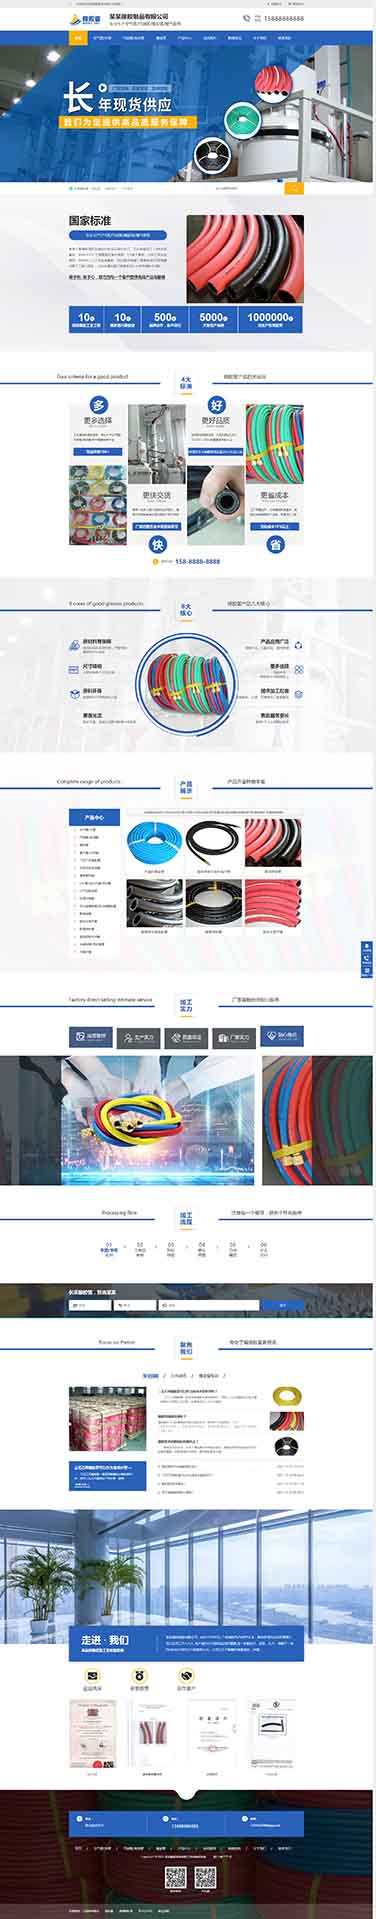 橡胶制品公司营销型网站模板